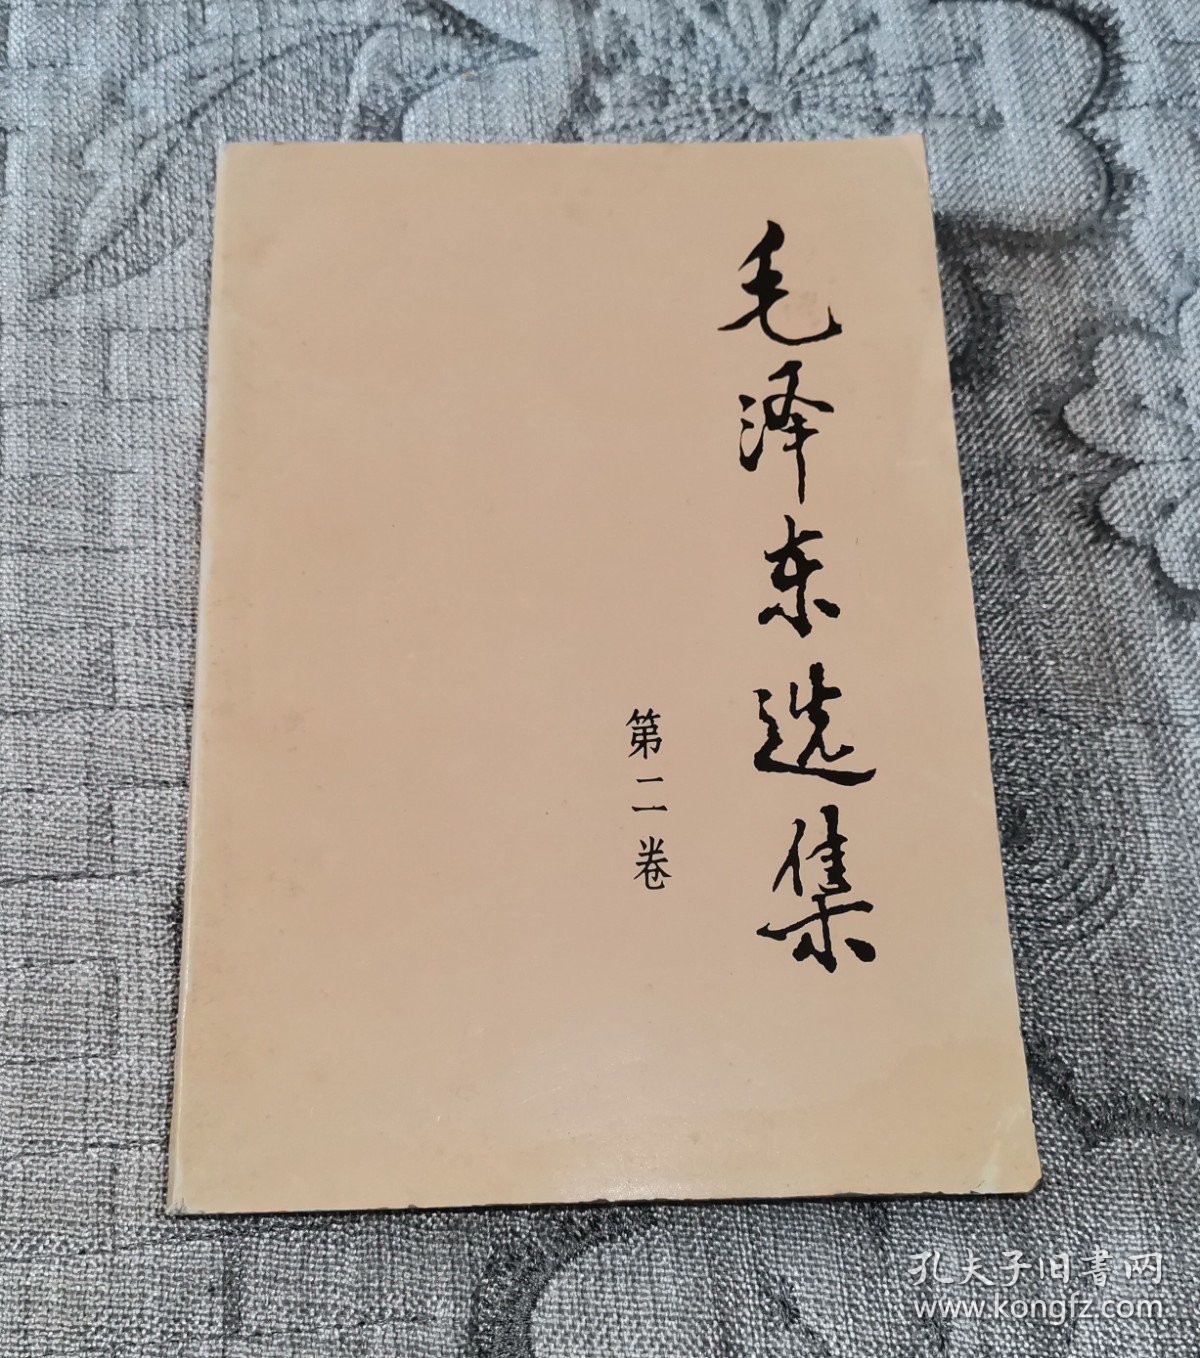 毛泽东选集第二卷(91年版)